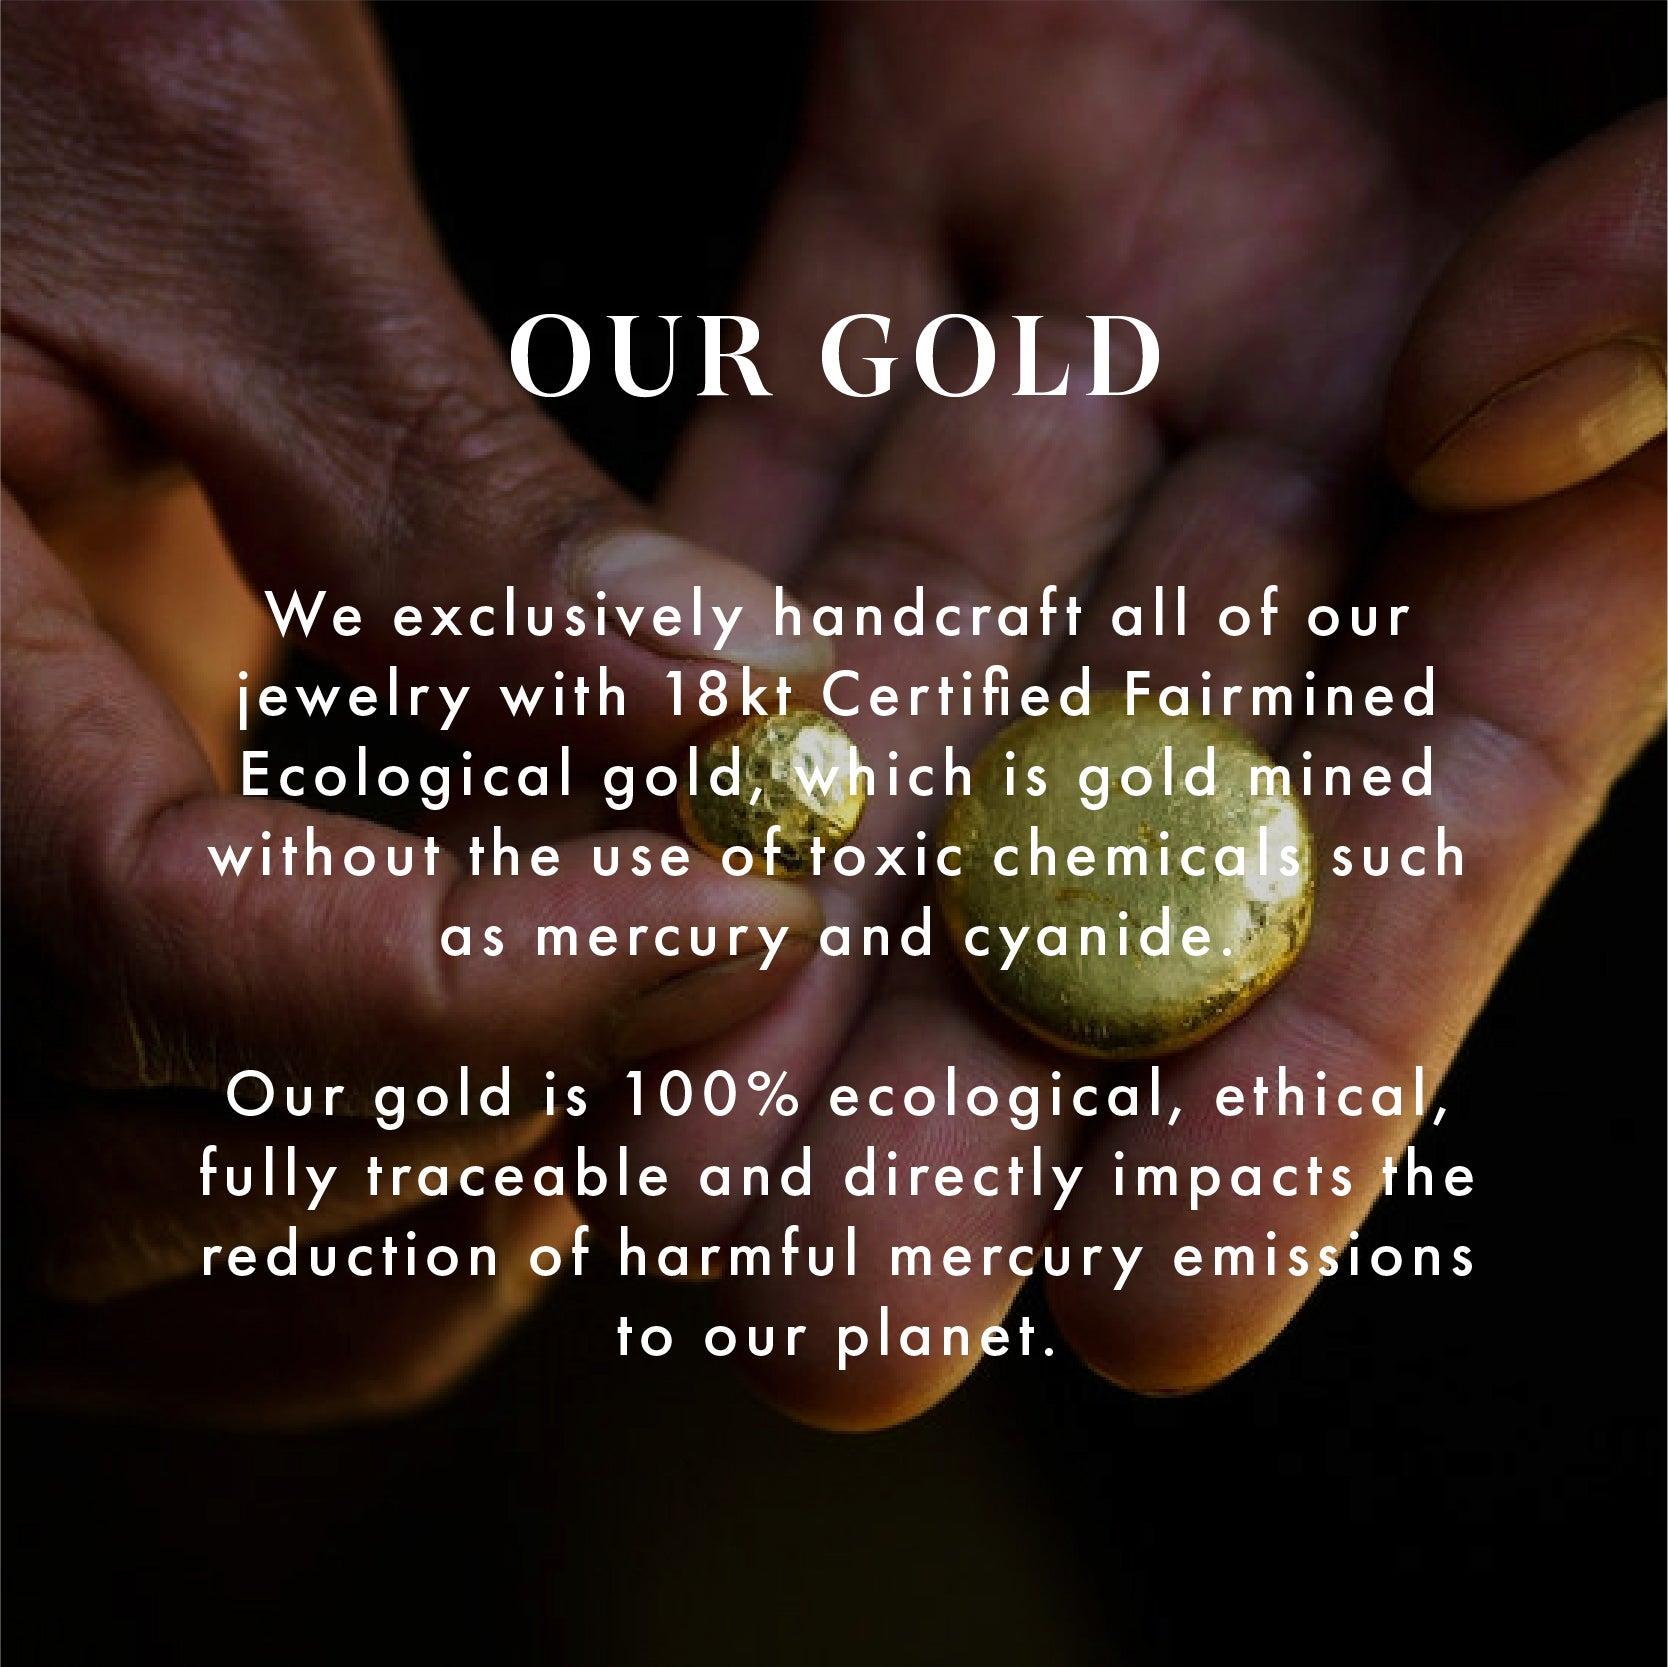 For Sale:  18kt Fairmined Ecological Gold Ethereal Laurel Leaf Wedding Ring in Rose Gold 6